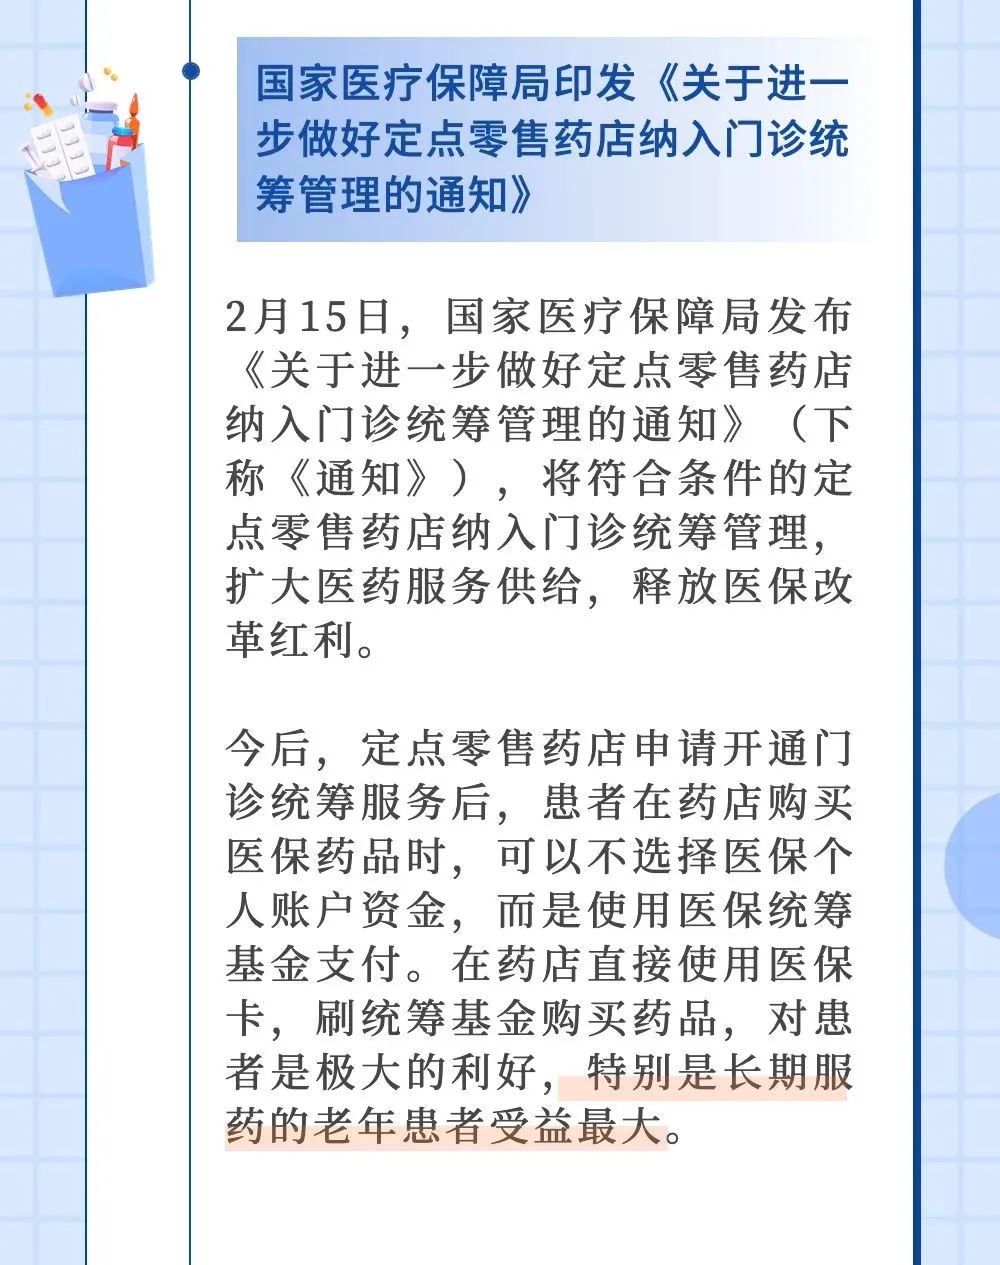 北京：增办“护理院”、免费体检……1月、2月老龄政策盘点→